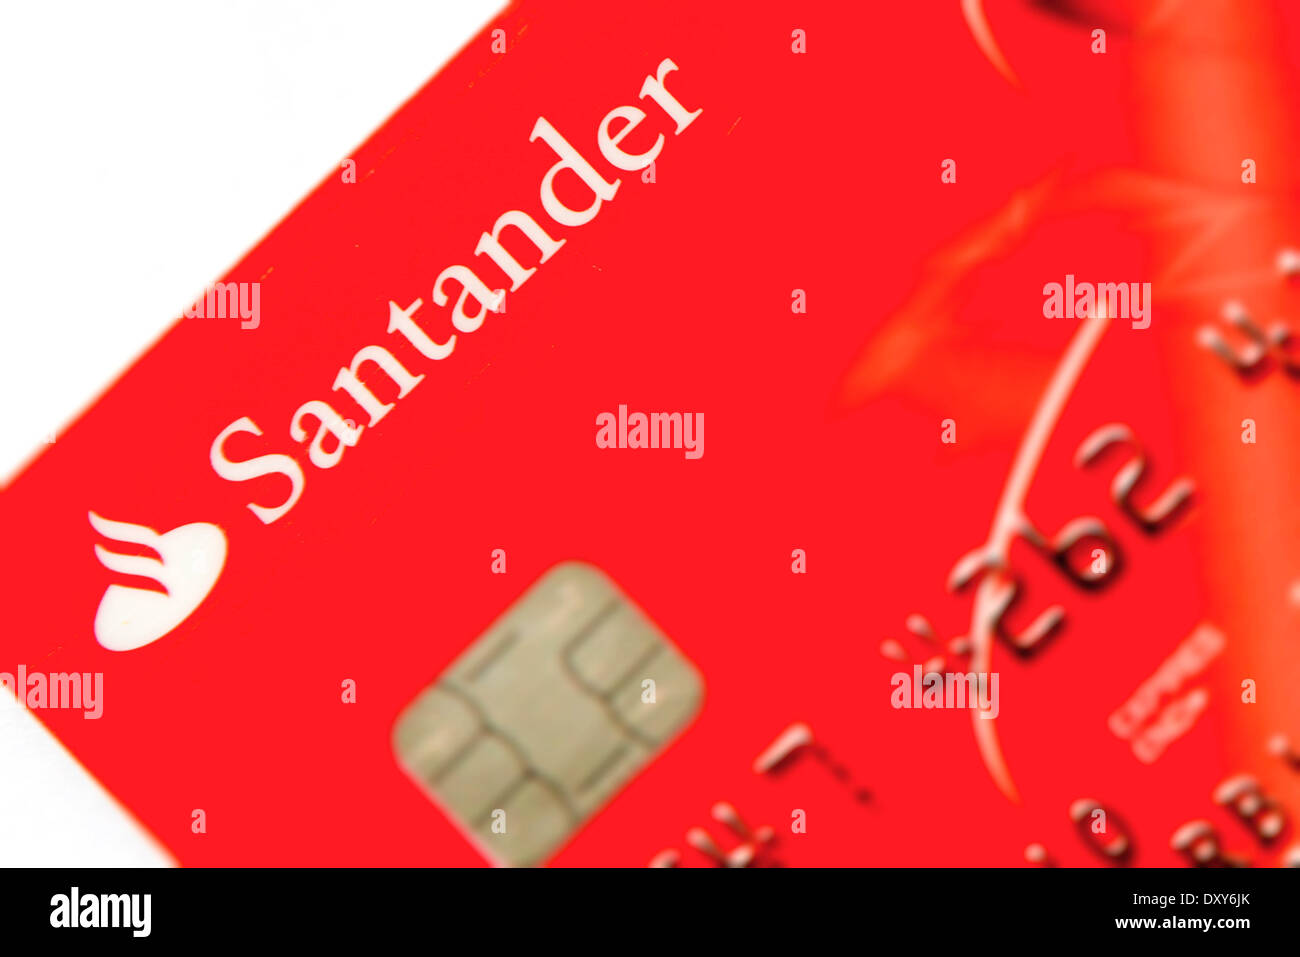 Santander bank card close up Stock Photo